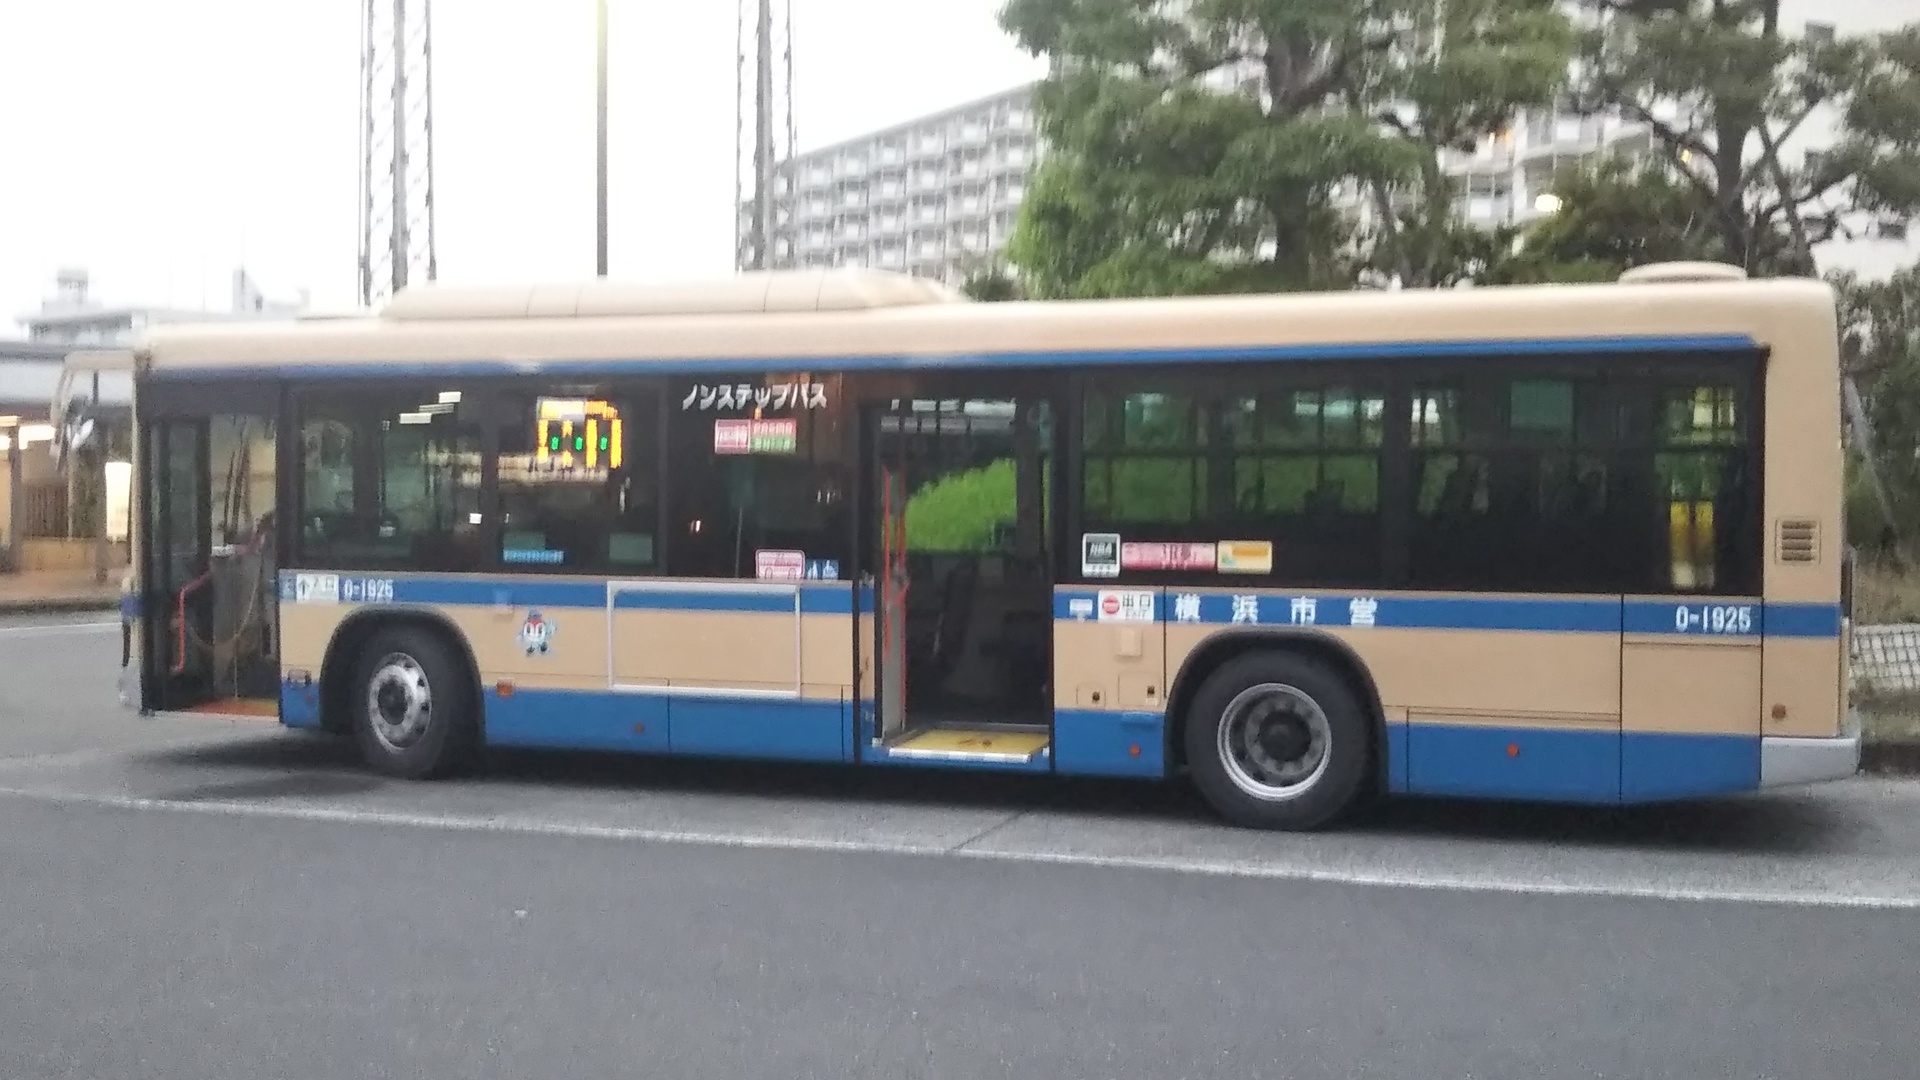 横浜市営バス 横浜市北部から客観的に路線バスを観察するblog